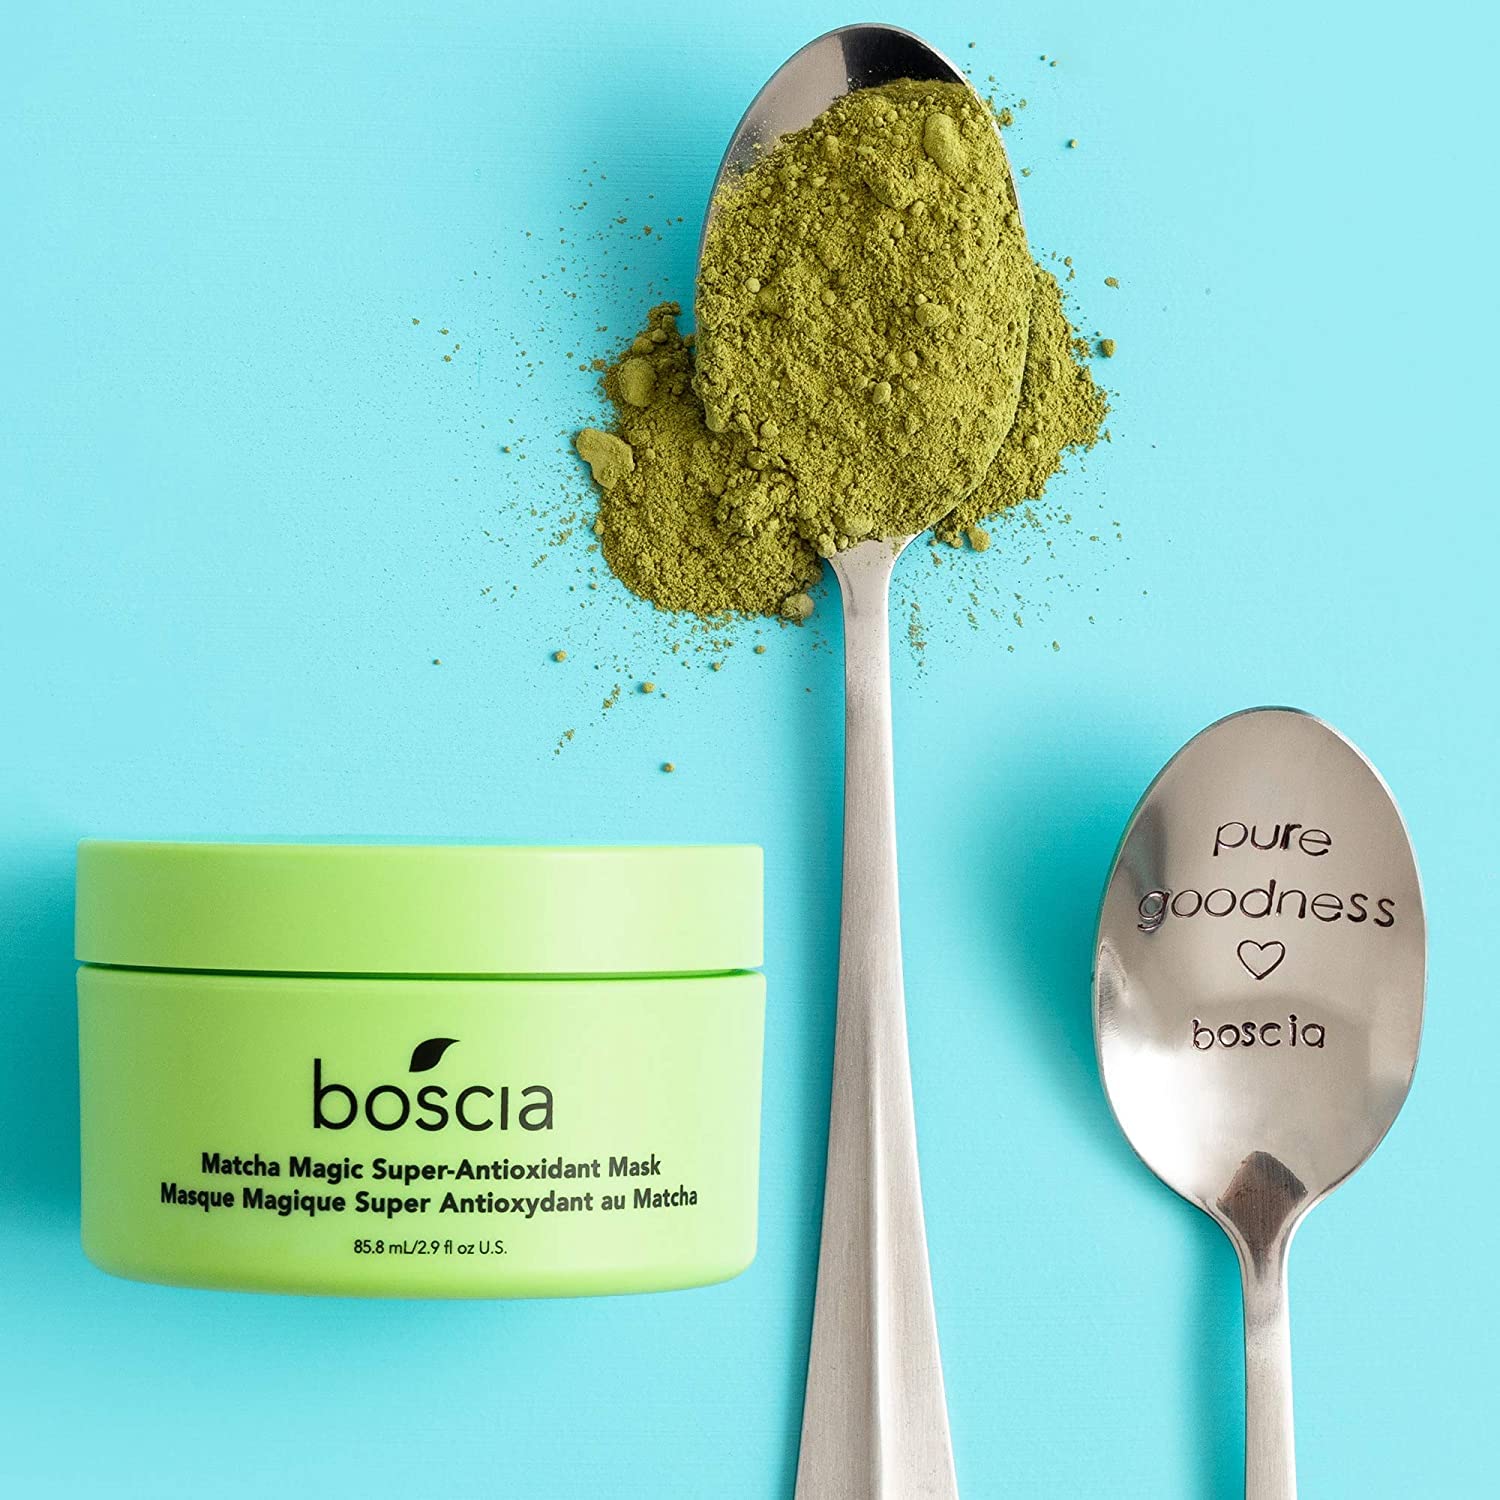 BOSCIA - MakeUp-BreakUp Cool Cleansing Oil & MATCHA Magic Super-Antioxidant Mask - Vegan, Cruelty-Free, Natural & Clean Skin Care - Bundle